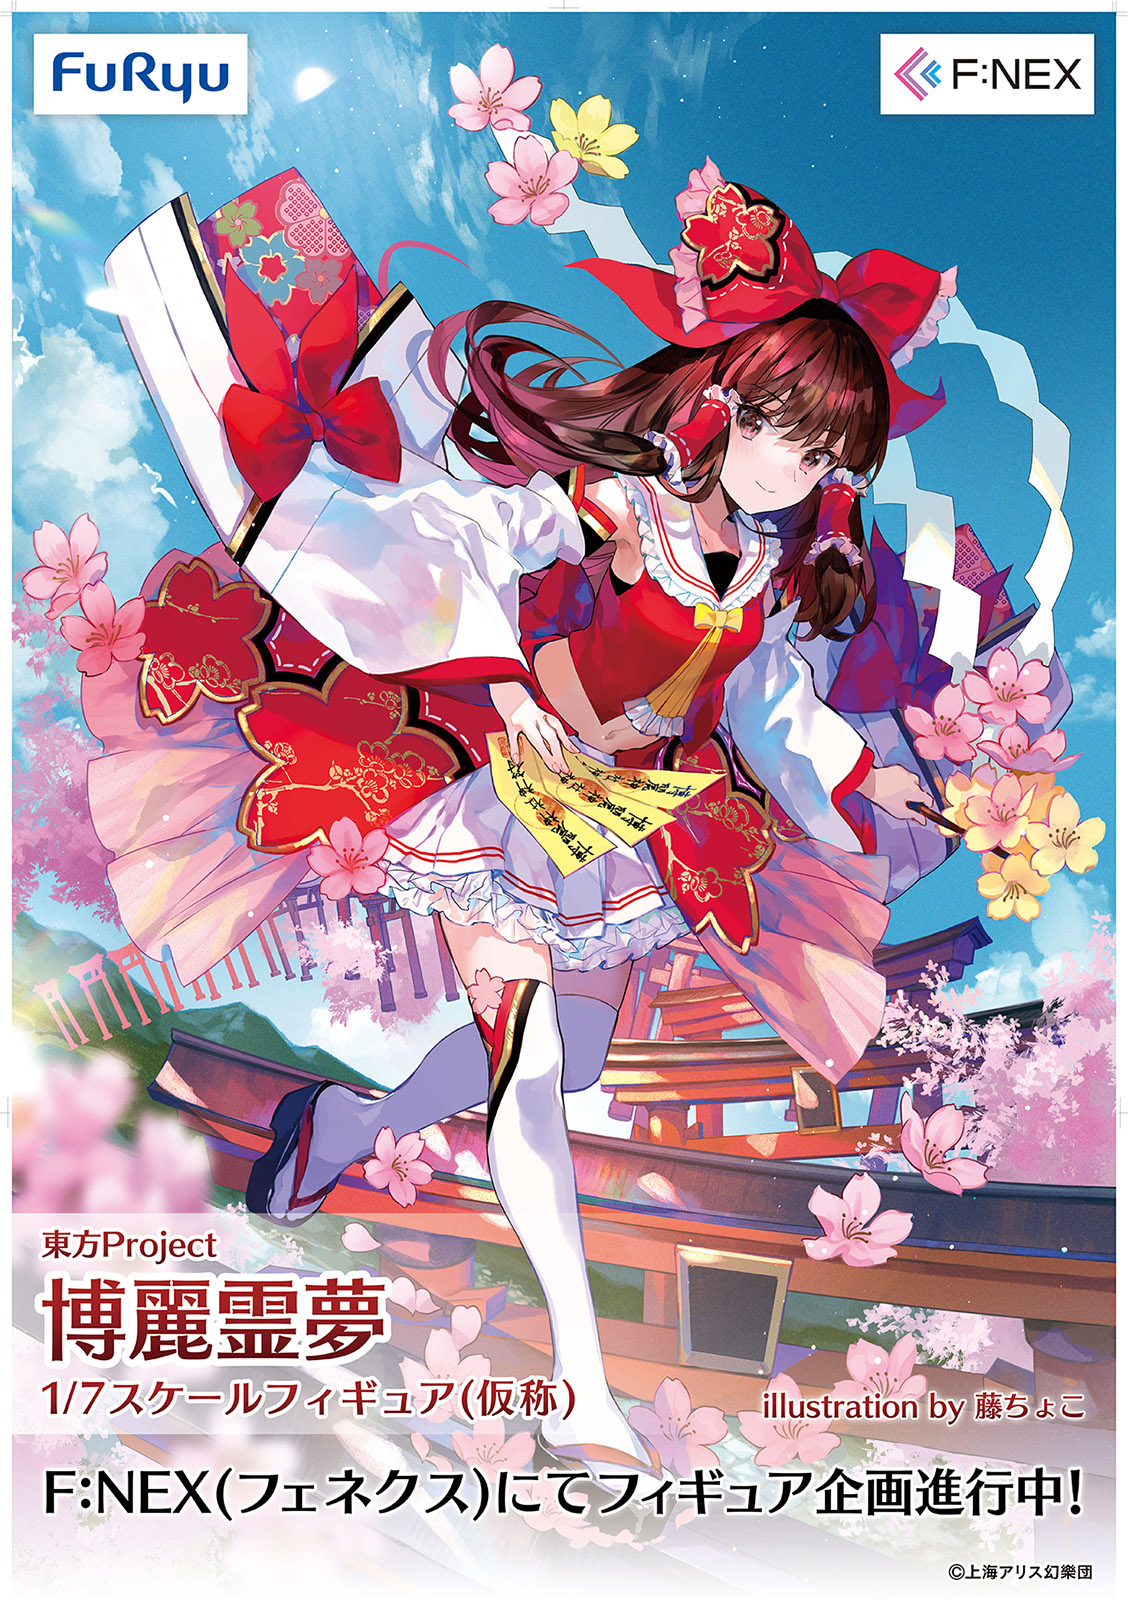 Illustration de Fuzichoco présentant Reimu Hakurei, la jeune fille du sanctuaire Hakurei dans le jeu "Touhou Project" développé par "Team Shanghai Alice".